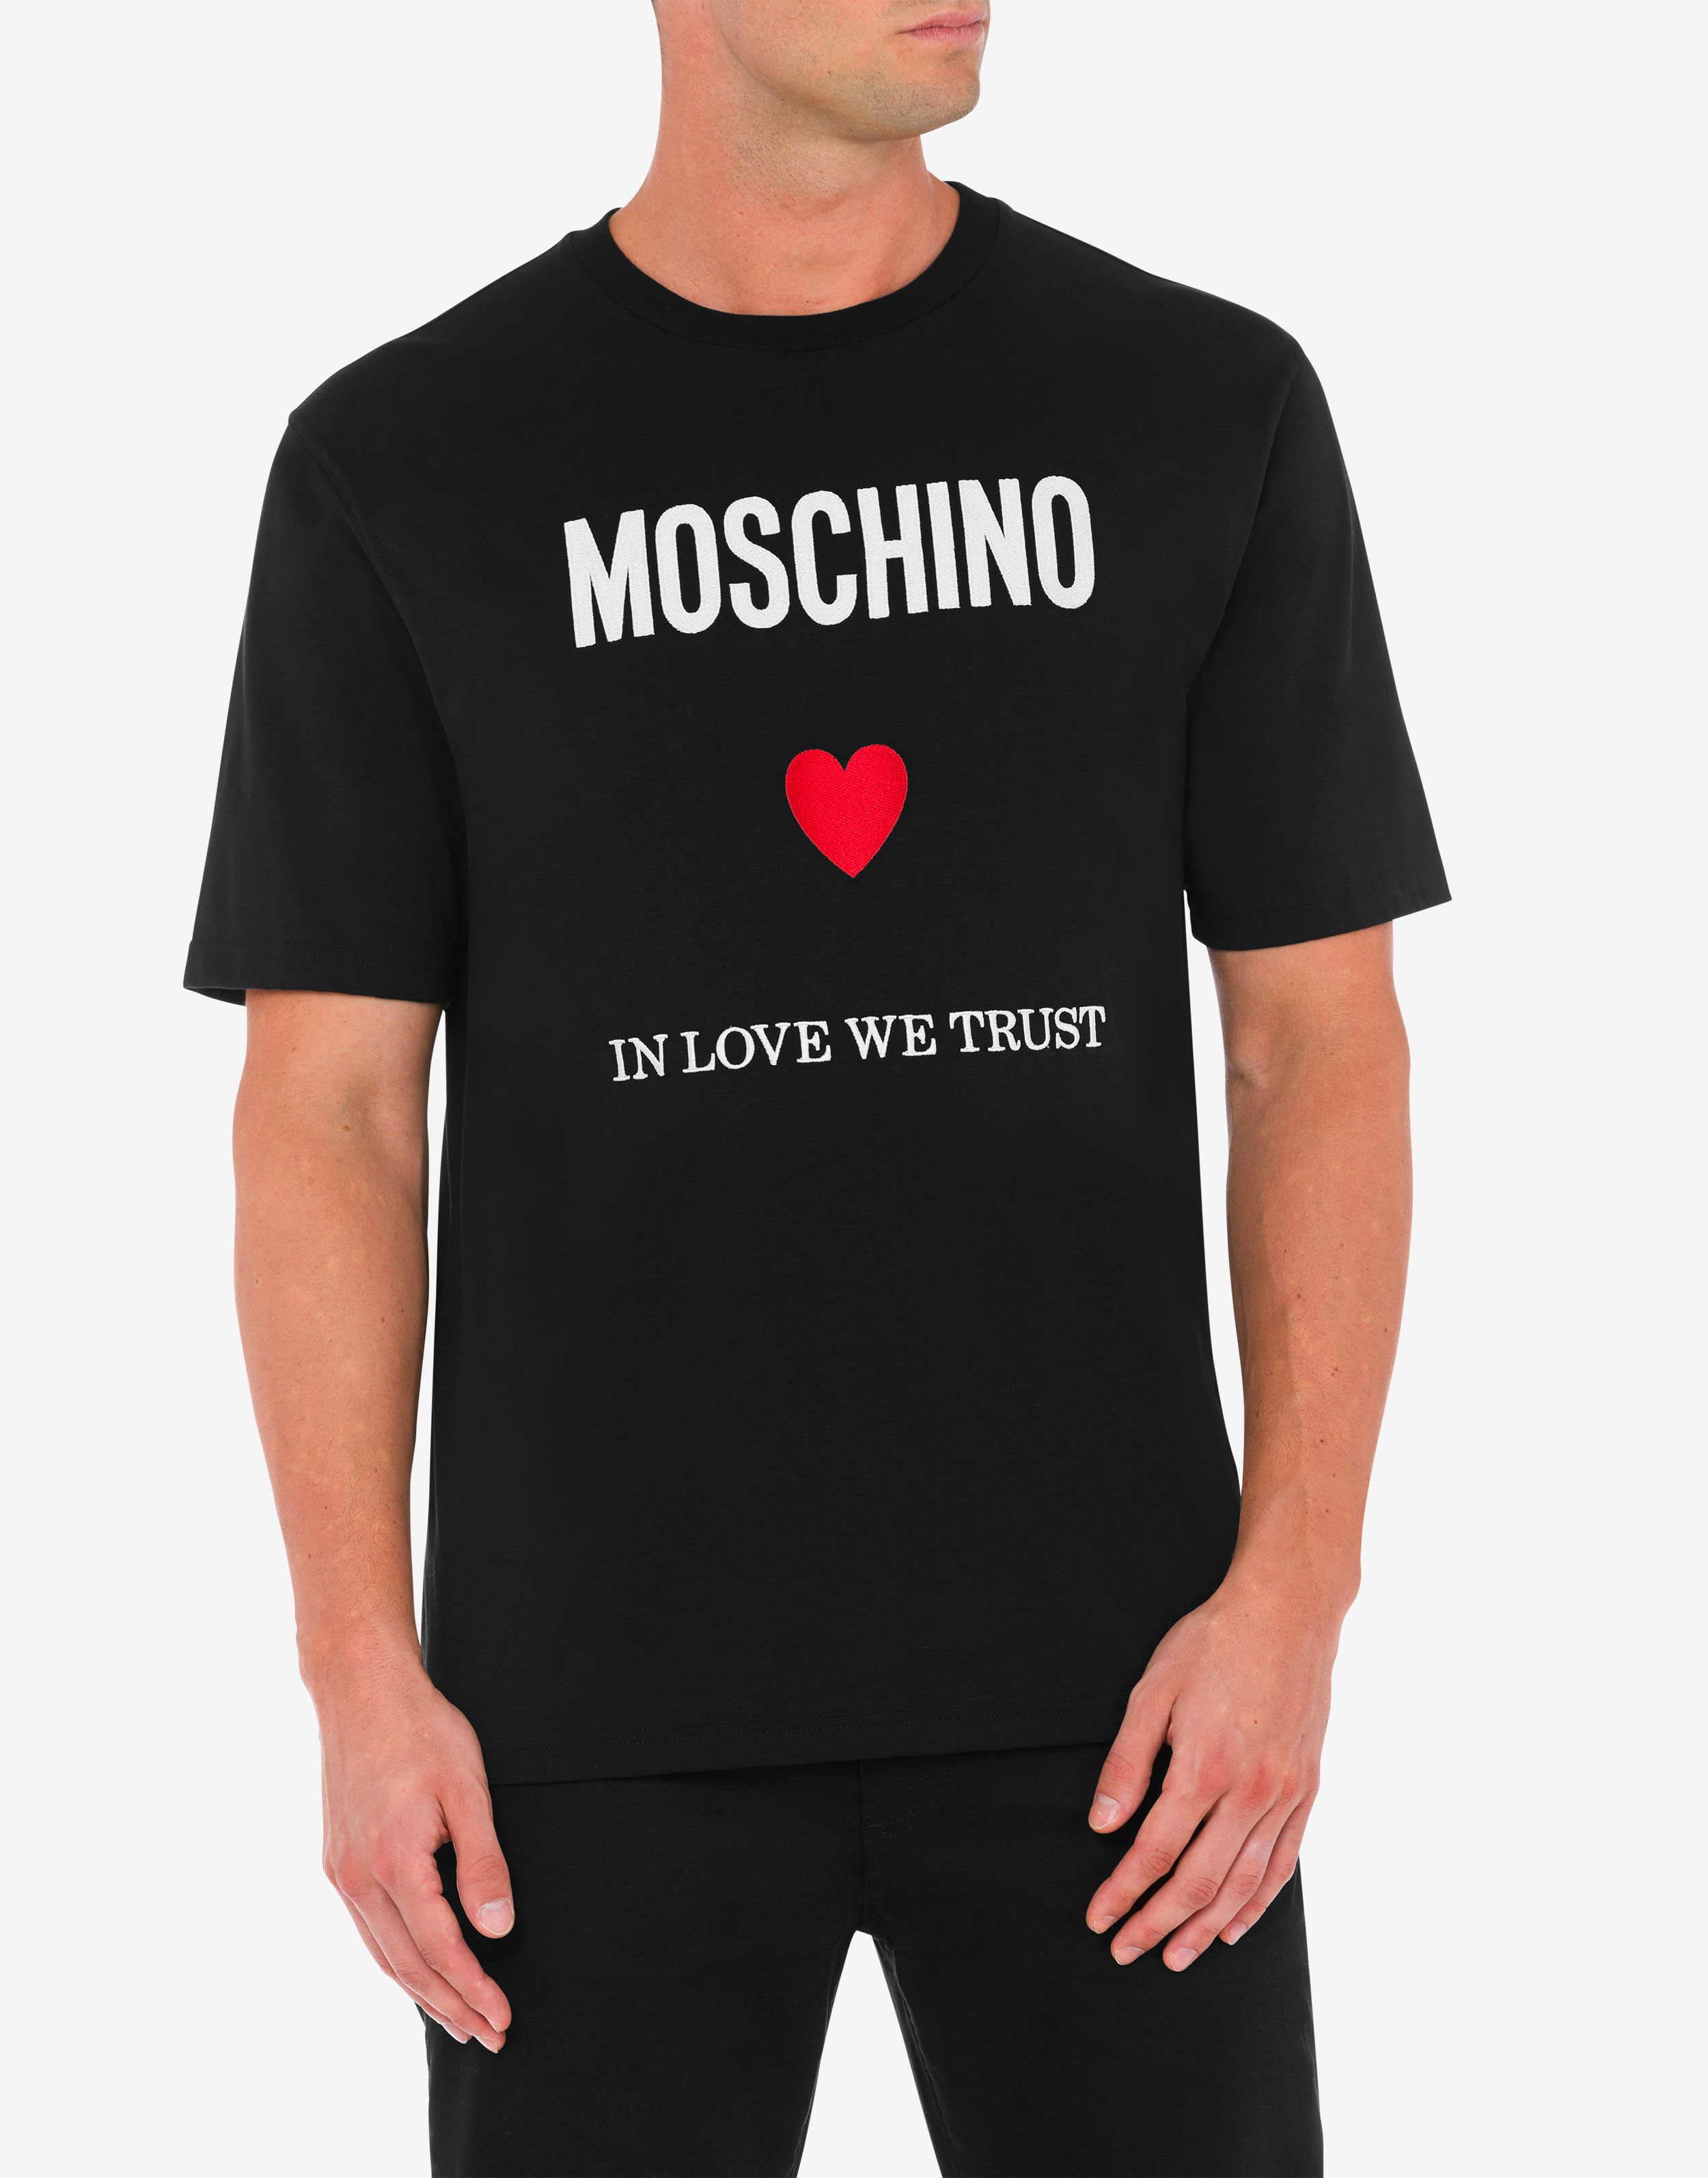 Moschino - T-shirt branca em algodão orgânico com o logótipo